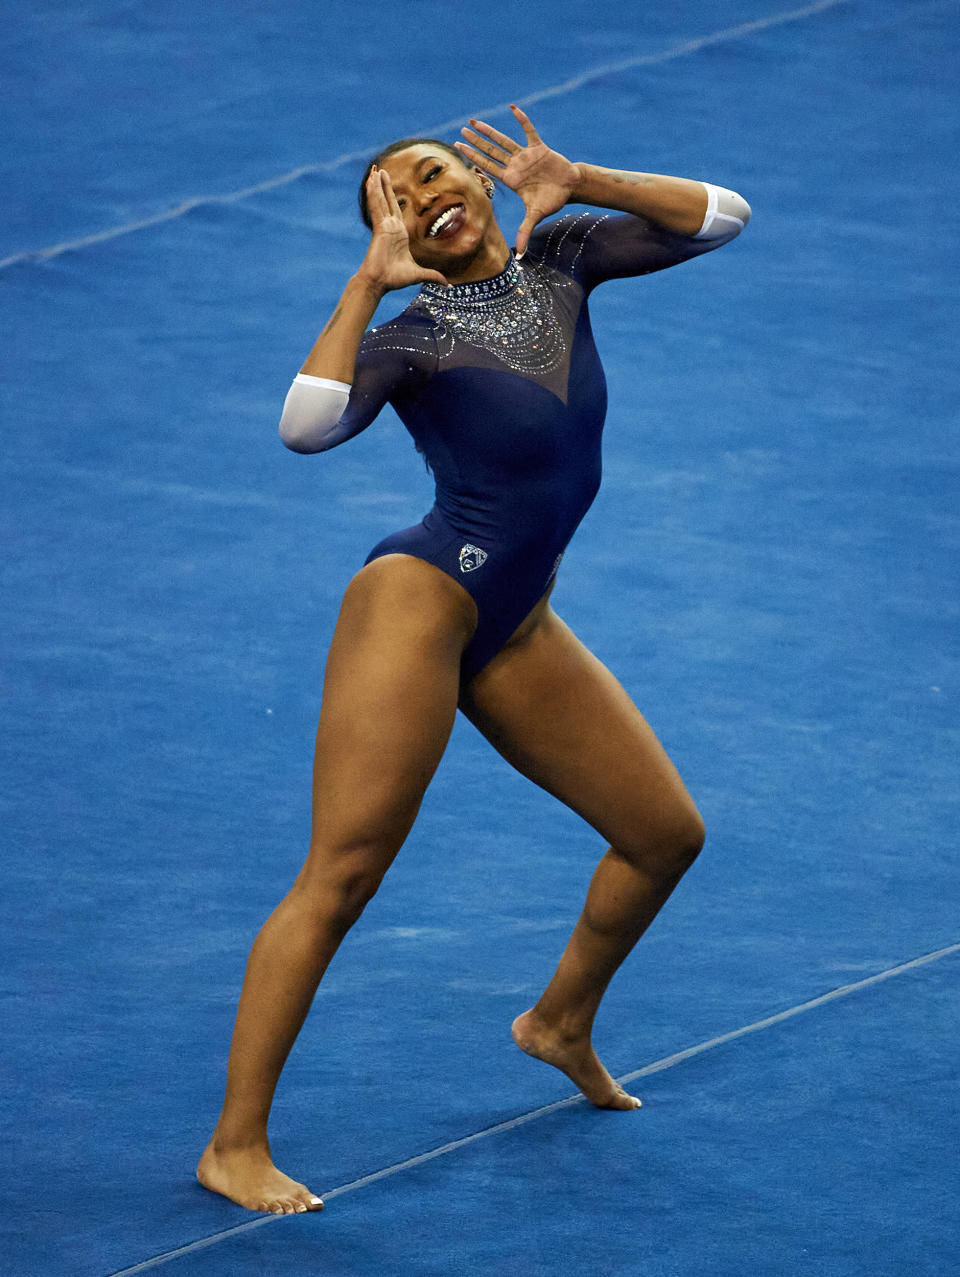 UCLA Gymnastics (Don Liebig / Courtesy UCLA Athletics)